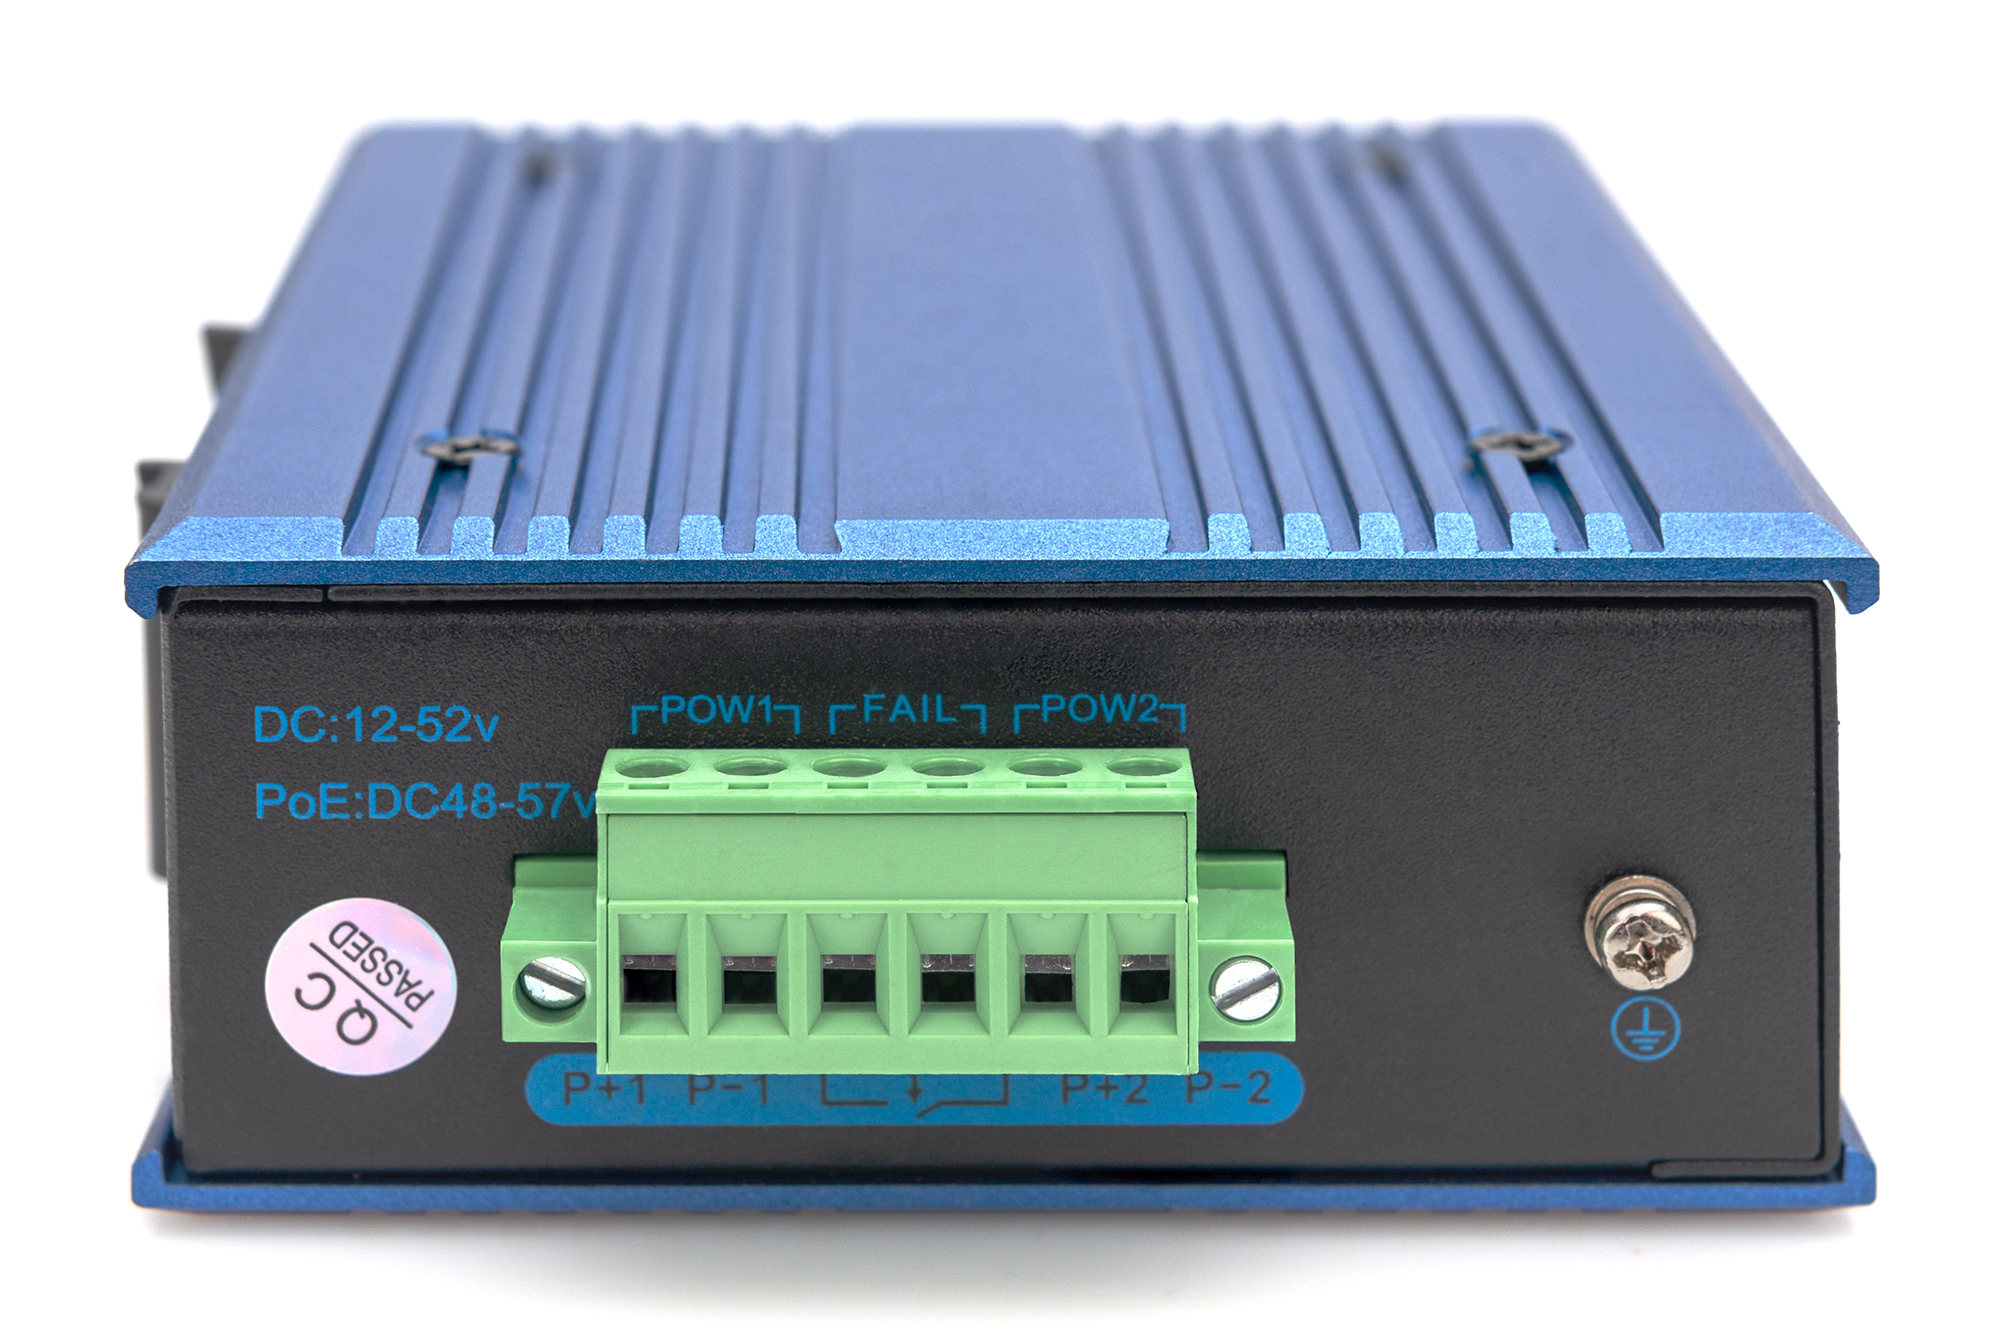 DIGITUS 4 Port Gigabit Ethernet Netzwerk Switch, Industrial, Unmanaged, 1 SFP Uplink